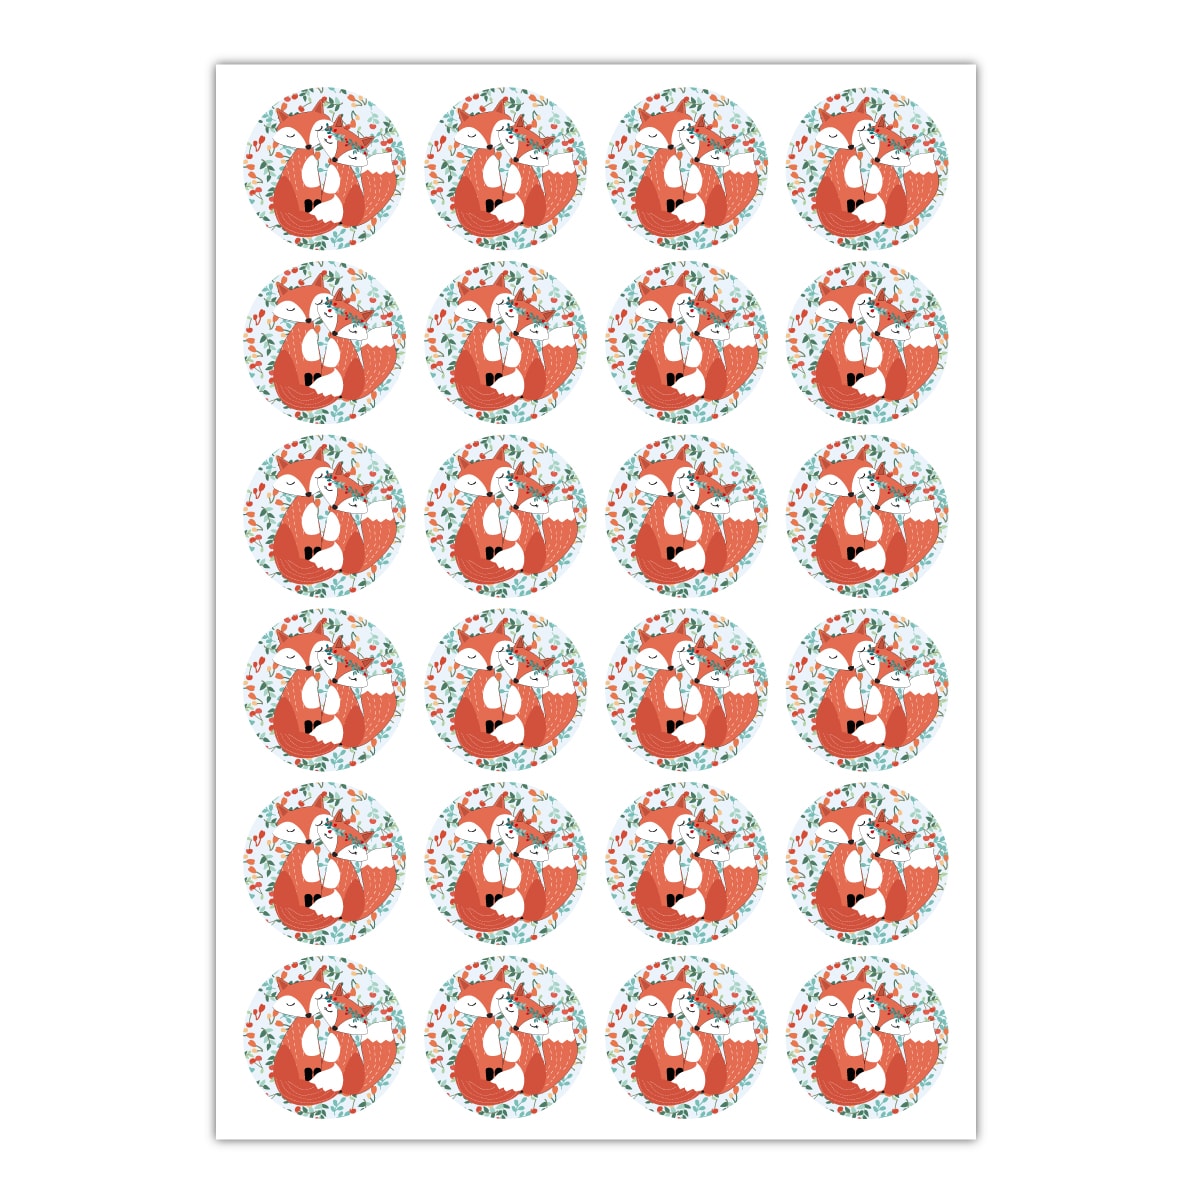 Kartenkaufrausch Sticker in orange: Liebes Aufkleber auch zur Hochzeit